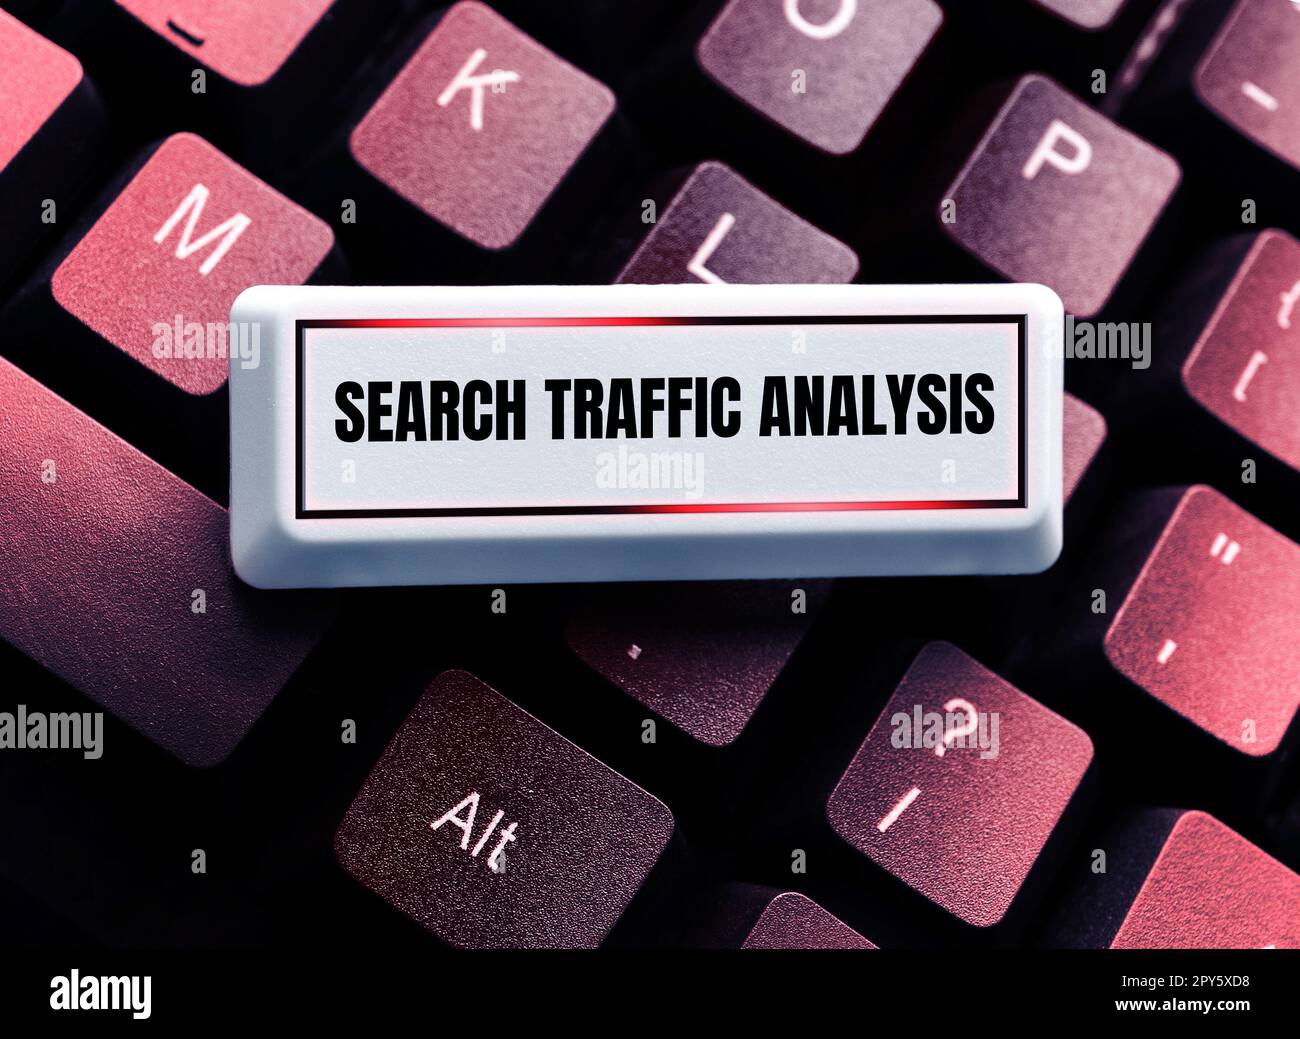 Schild mit Anzeige von Search Traffic Analysis. Konzeptioneller Fotoservice, mit dem Internetnutzer nach Inhalten suchen können Stockfoto